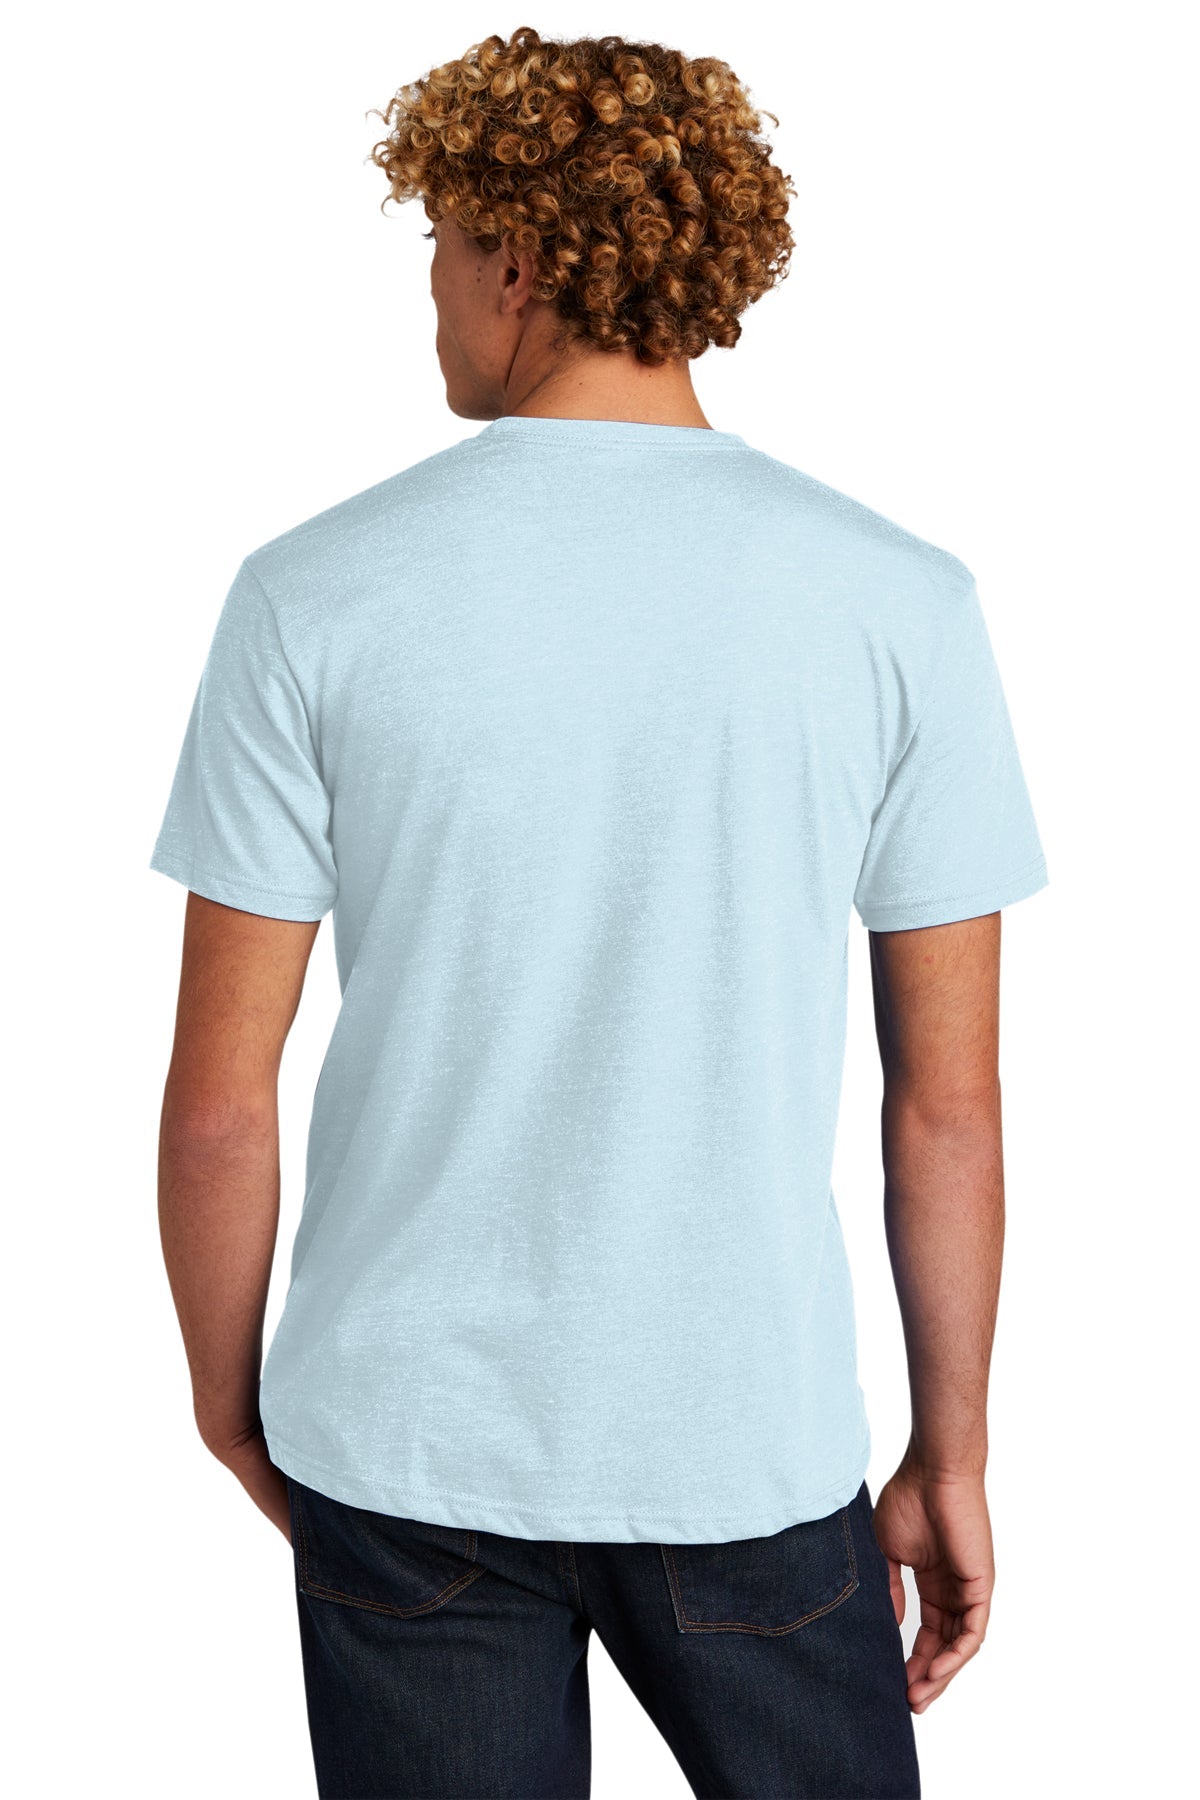 Next Level Unisex CVC Customized T-Shirts, Ice Blue